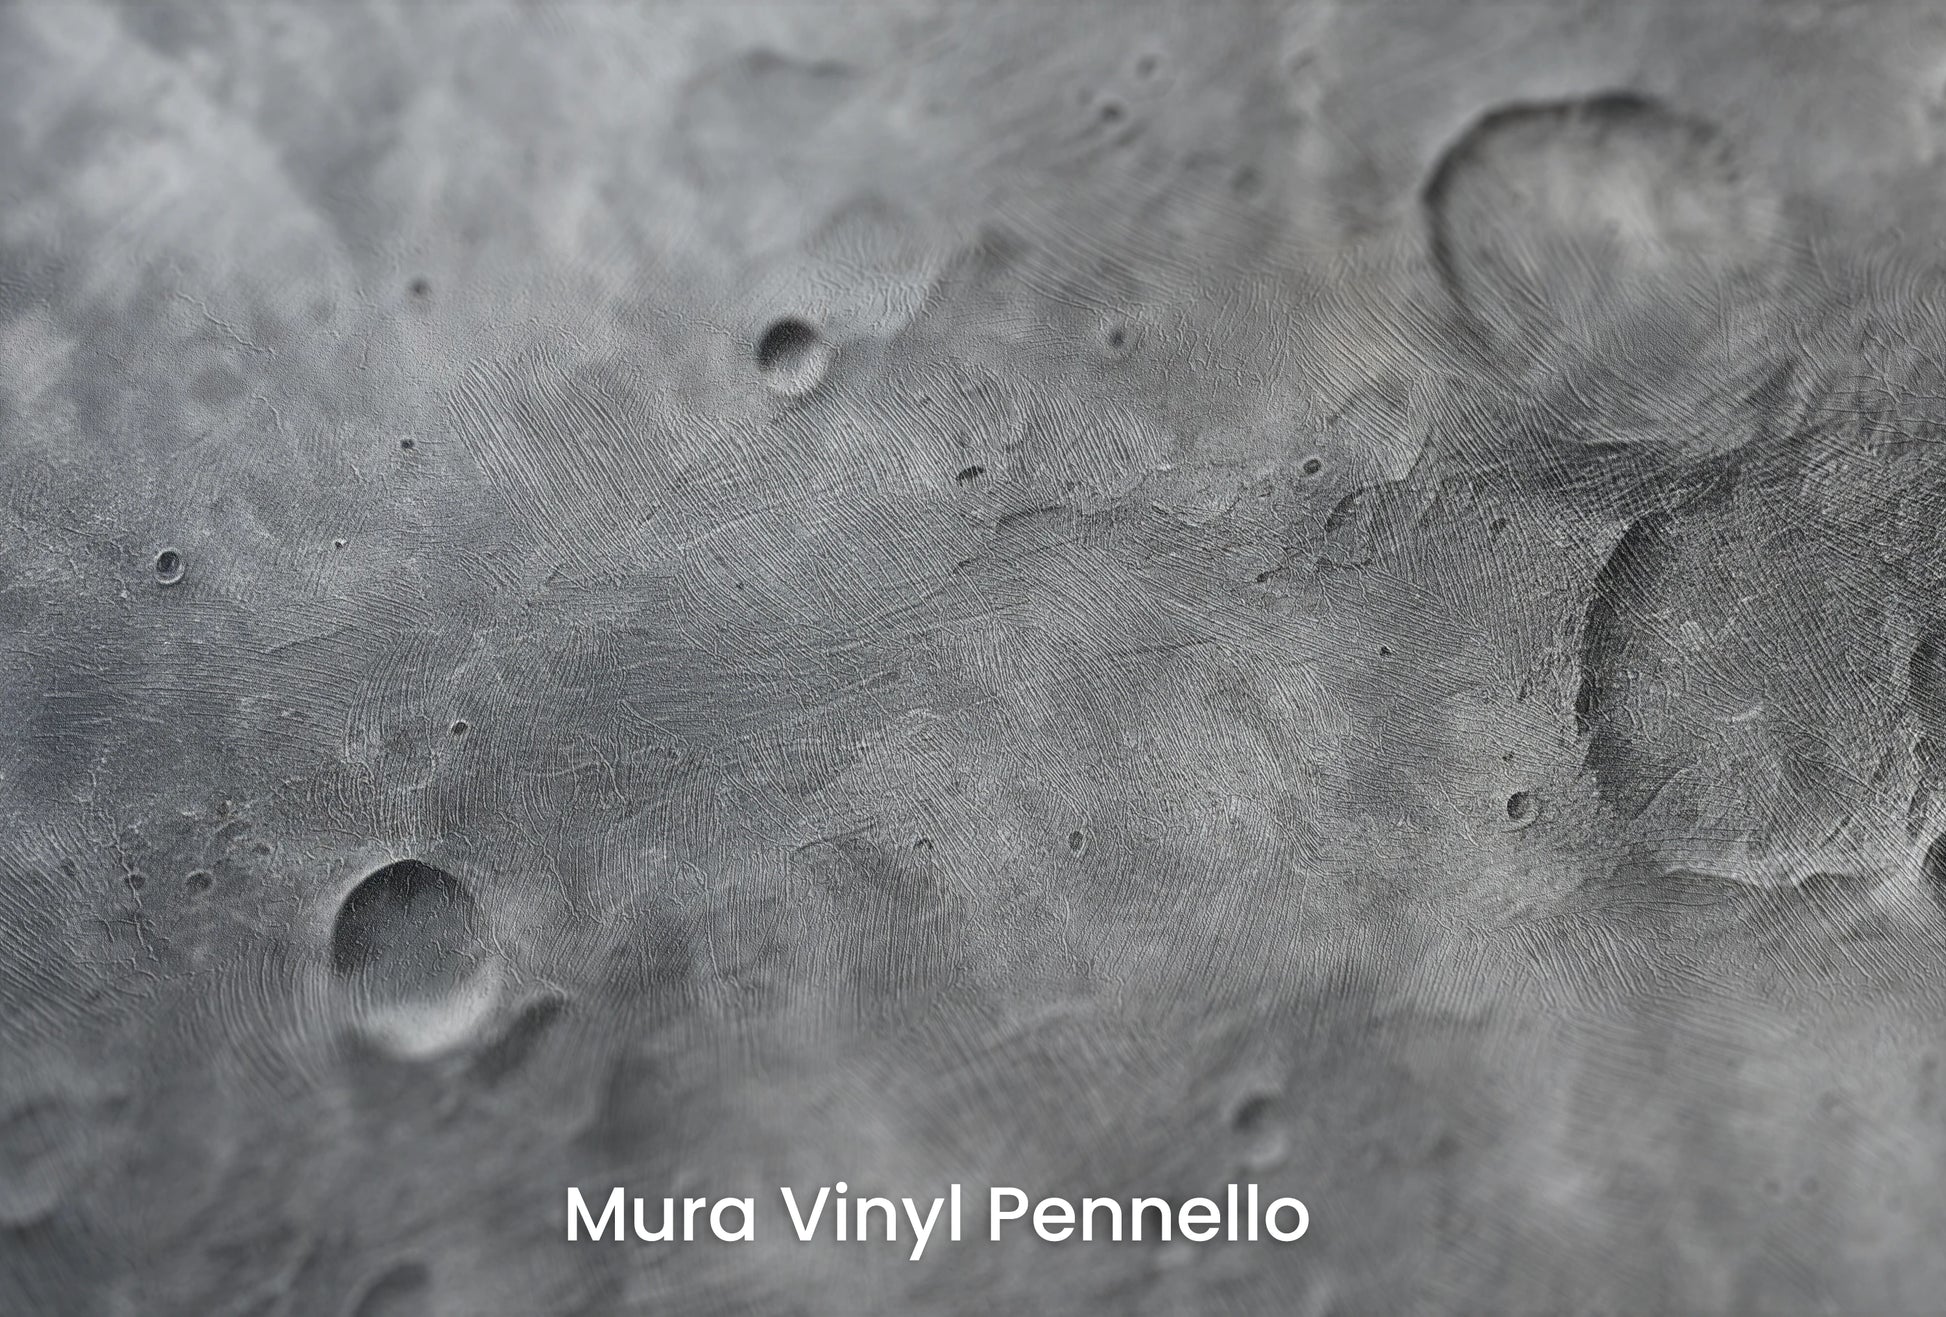 Zbliżenie na artystyczną fototapetę o nazwie Solar Waves na podłożu Mura Vinyl Pennello - faktura pociągnięć pędzla malarskiego.